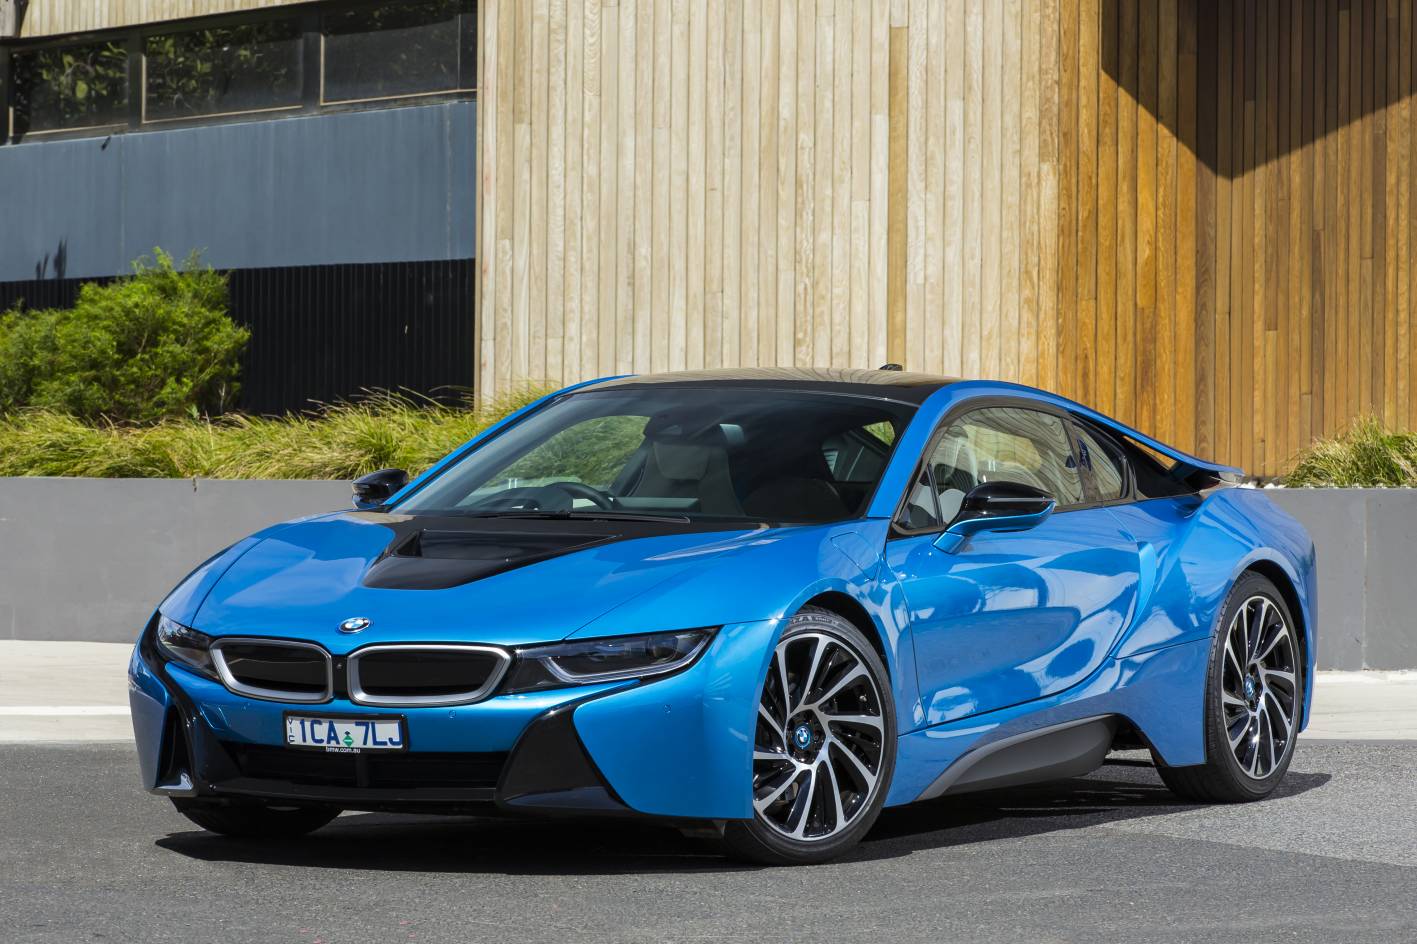 BMW Cars - News: BMW i8 sports car on sale in Australia from $299k